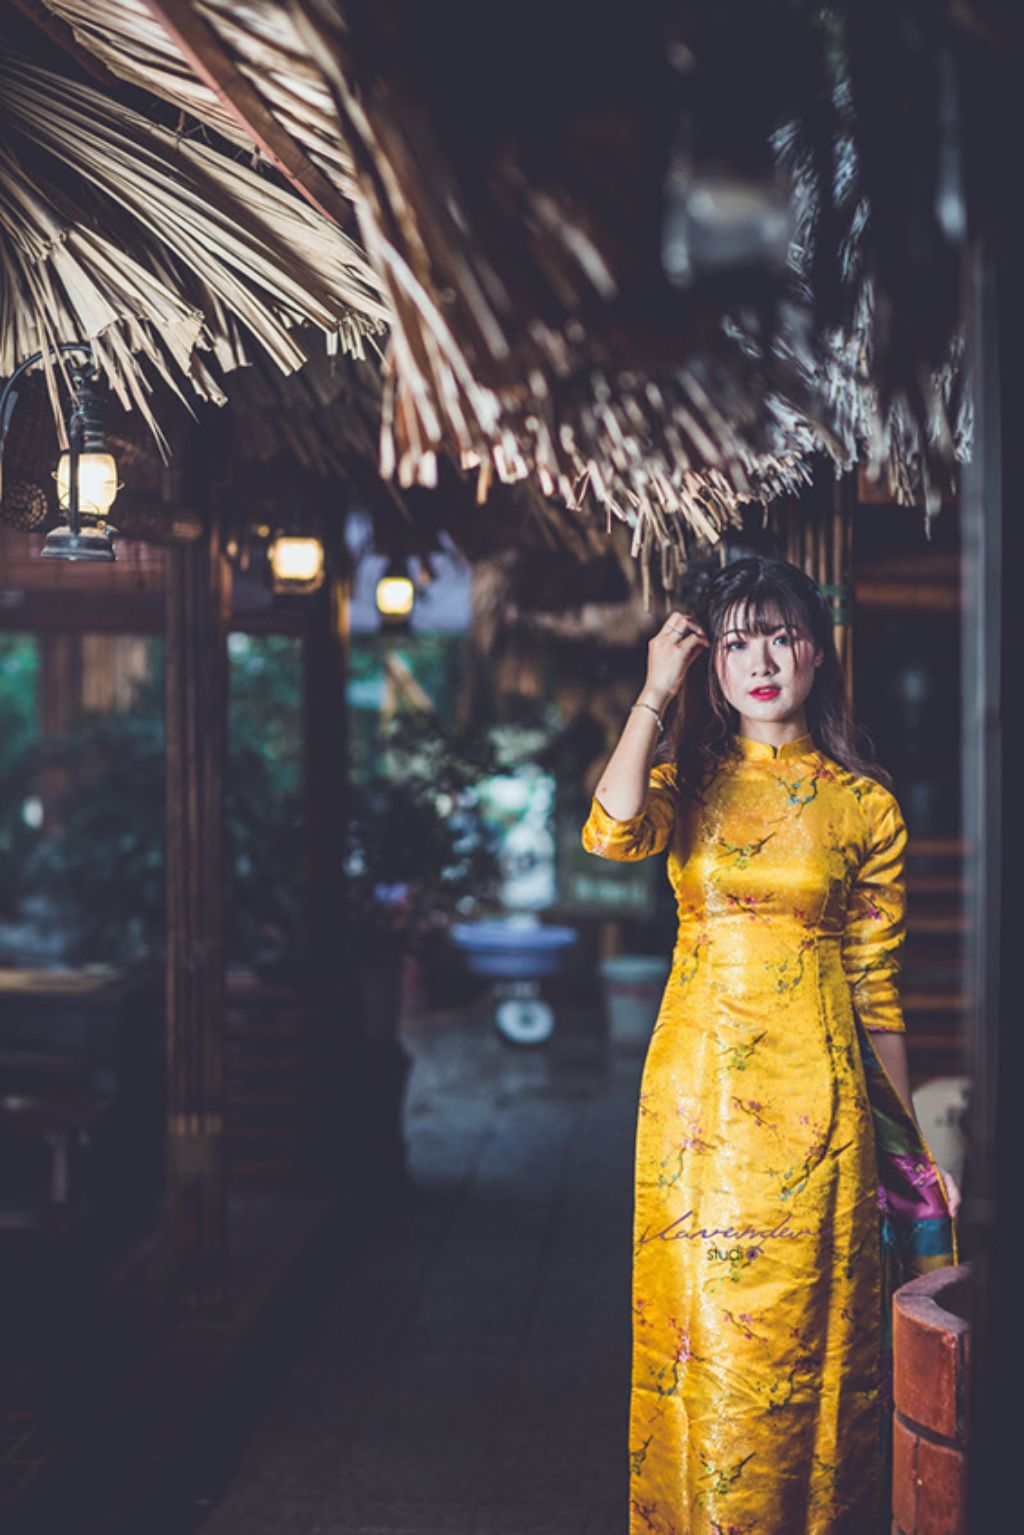 Chụp hình Tết với áo dài tôn vinh vẻ đẹp người phụ nữ Việt
